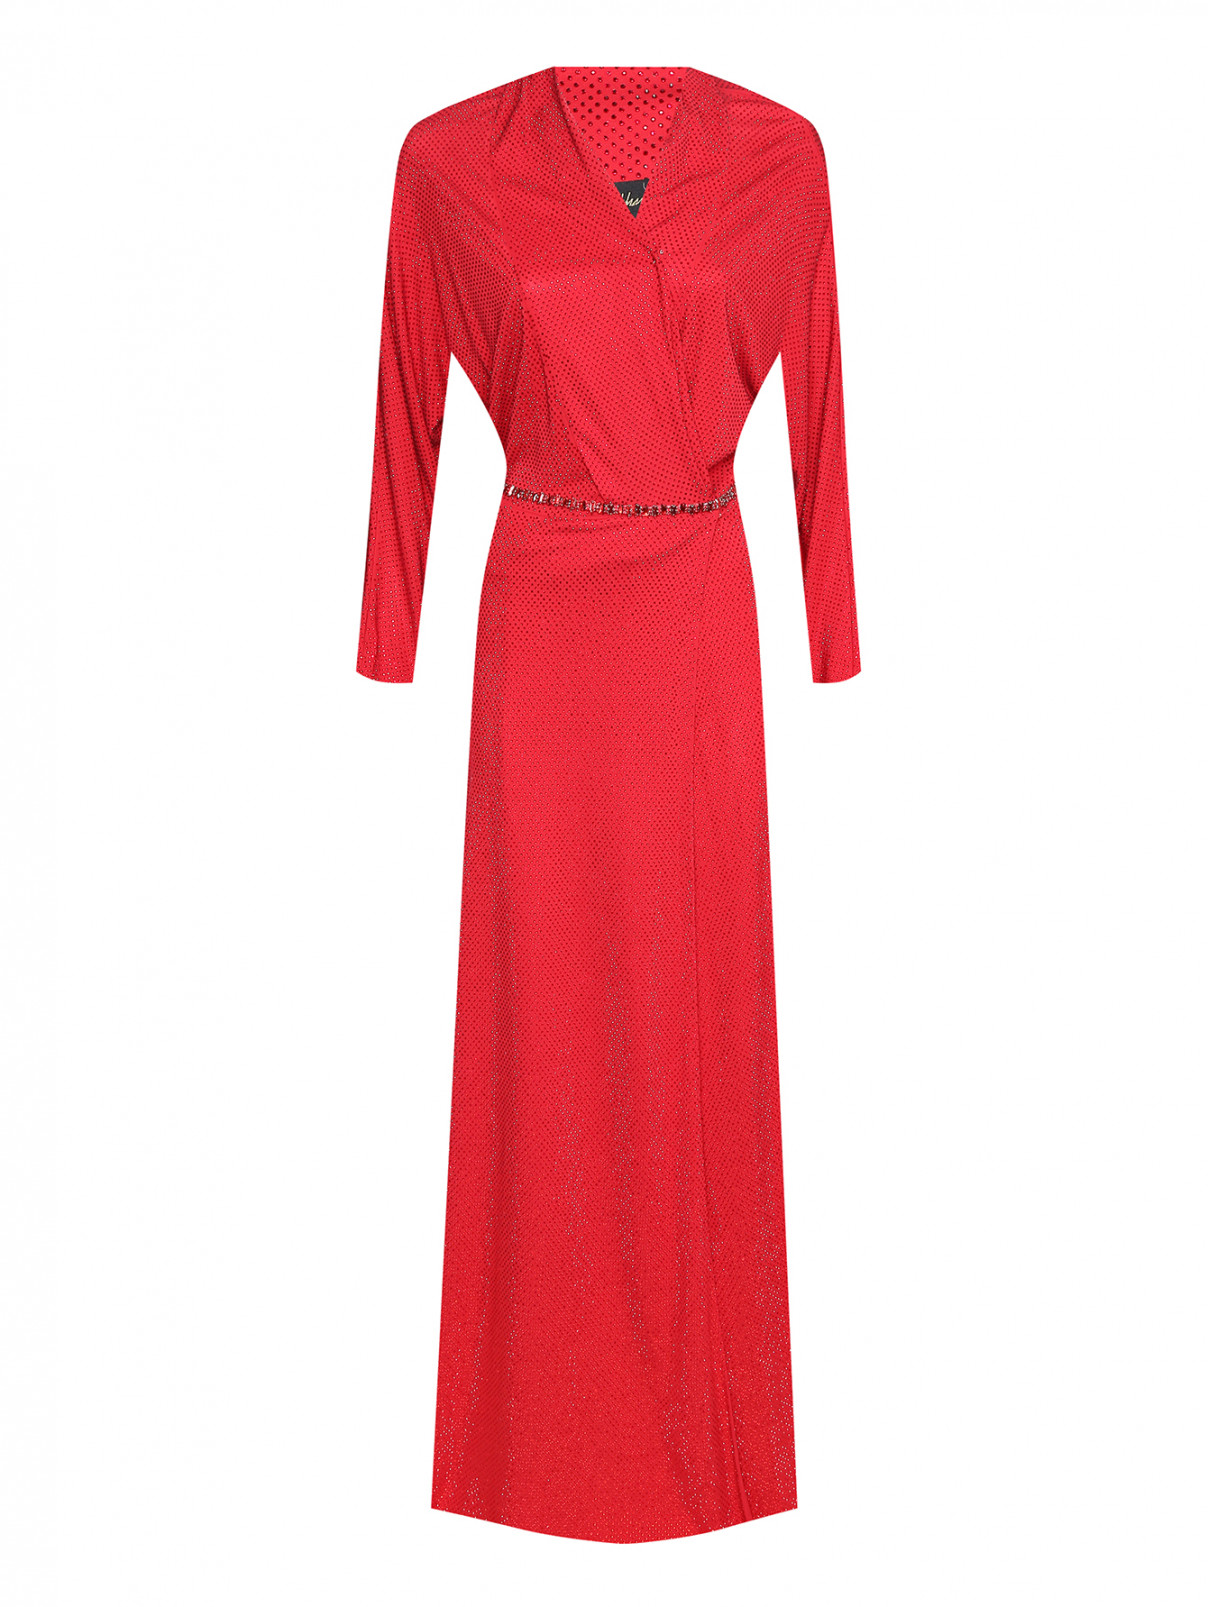 Платье-макси из вискозы, декорированное стразами Jenny Packham  –  Общий вид  – Цвет:  Красный